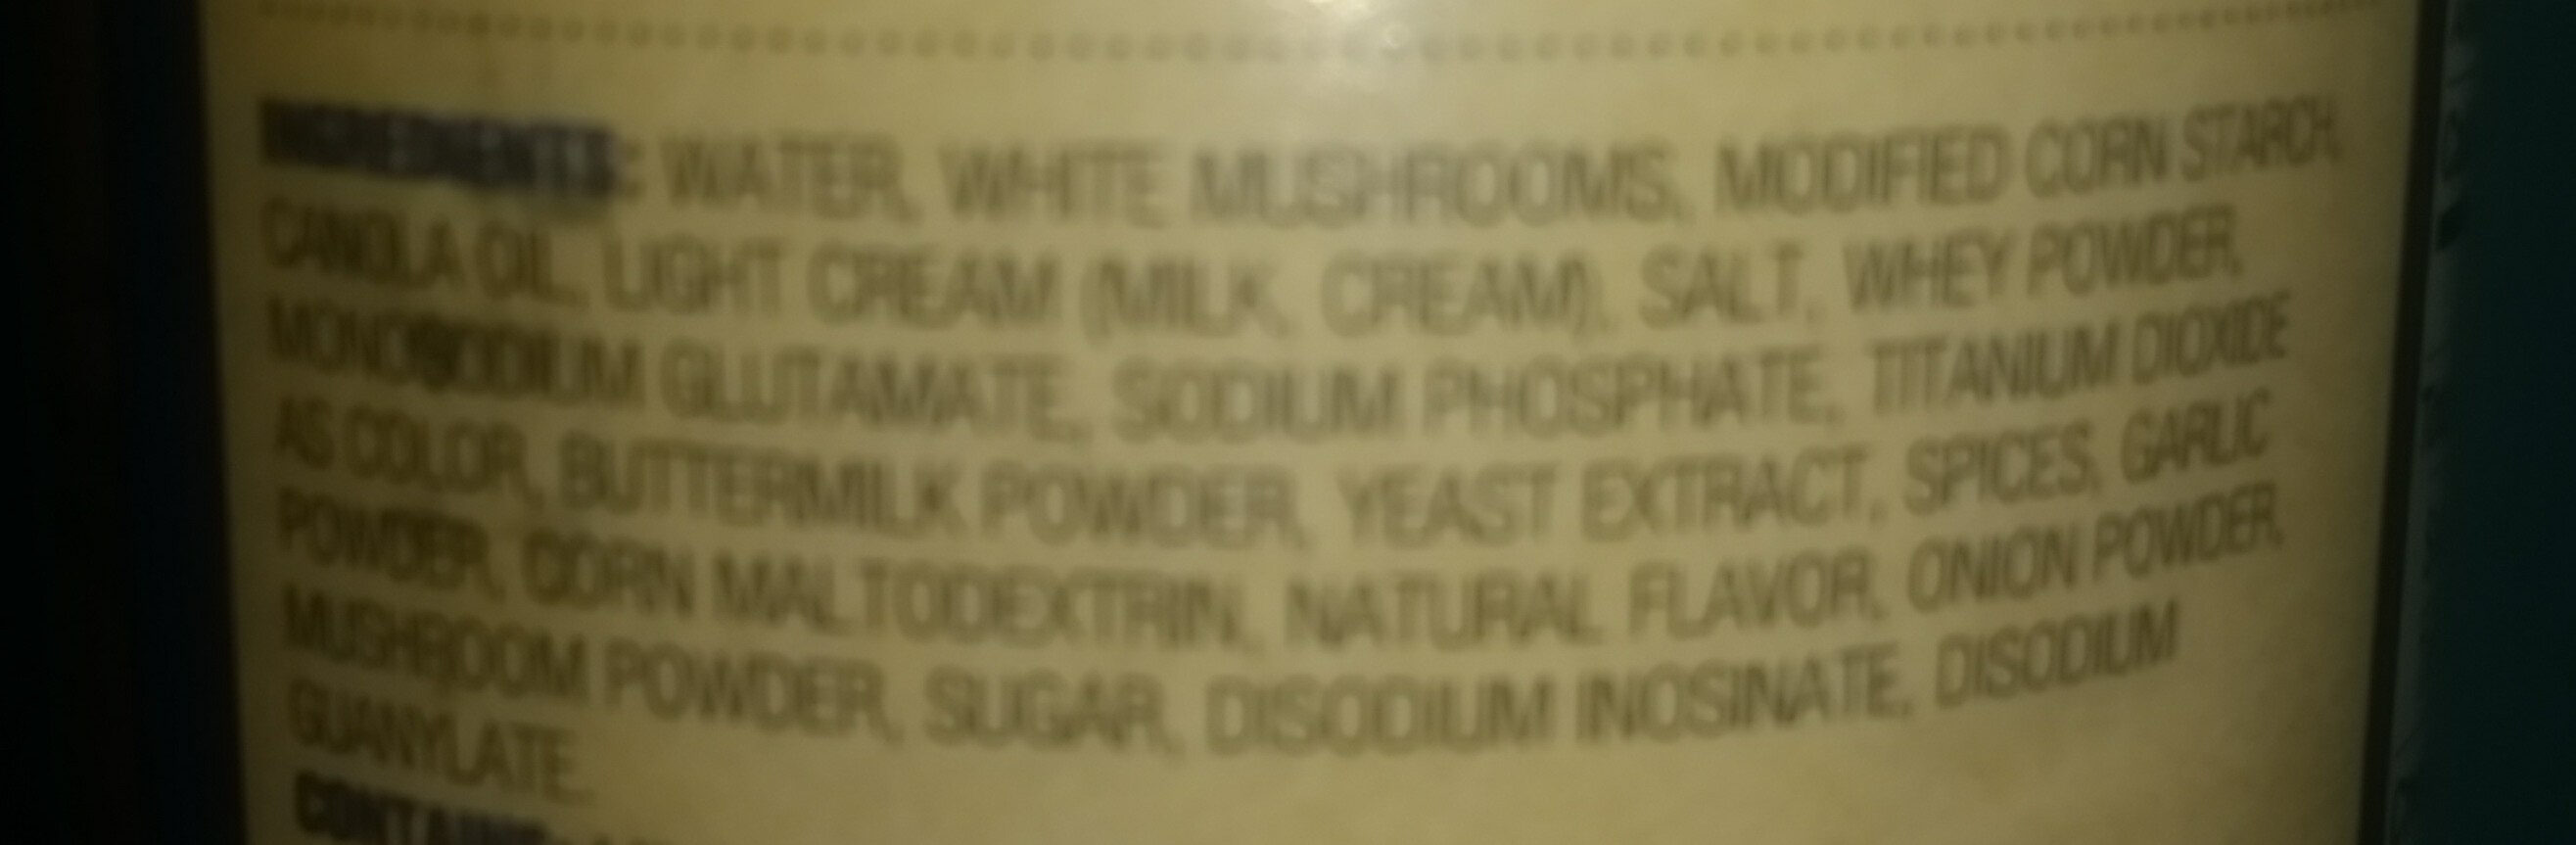 Cream of Mushroom Soup - Ingredients